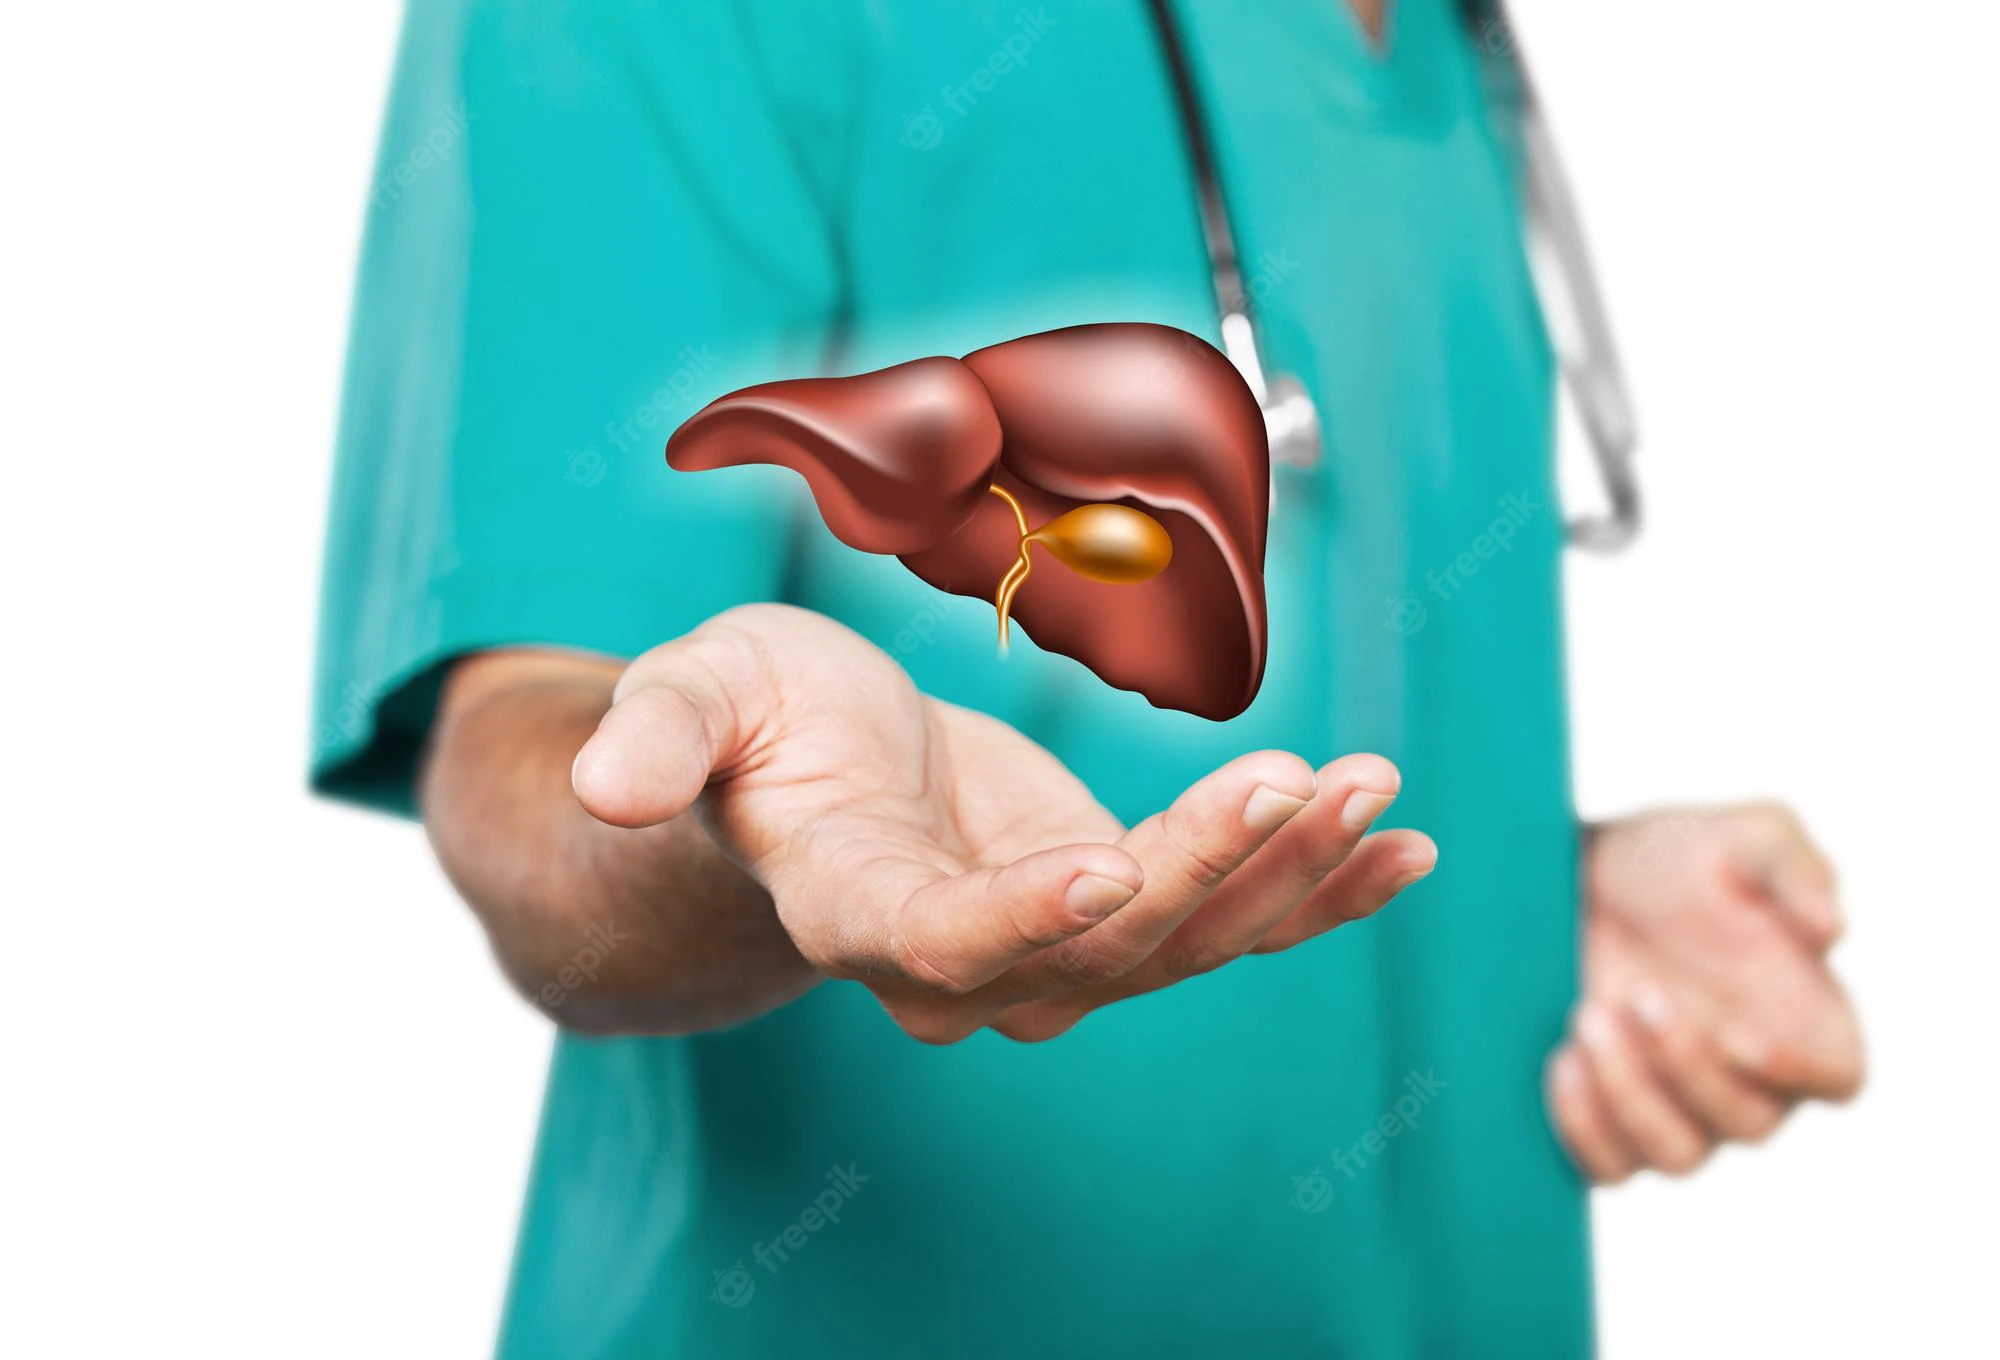 Best Surgeon For Gallbladder Removal In Hyderabad | Gallbladder Surgeon | Dr.Datta Ram U